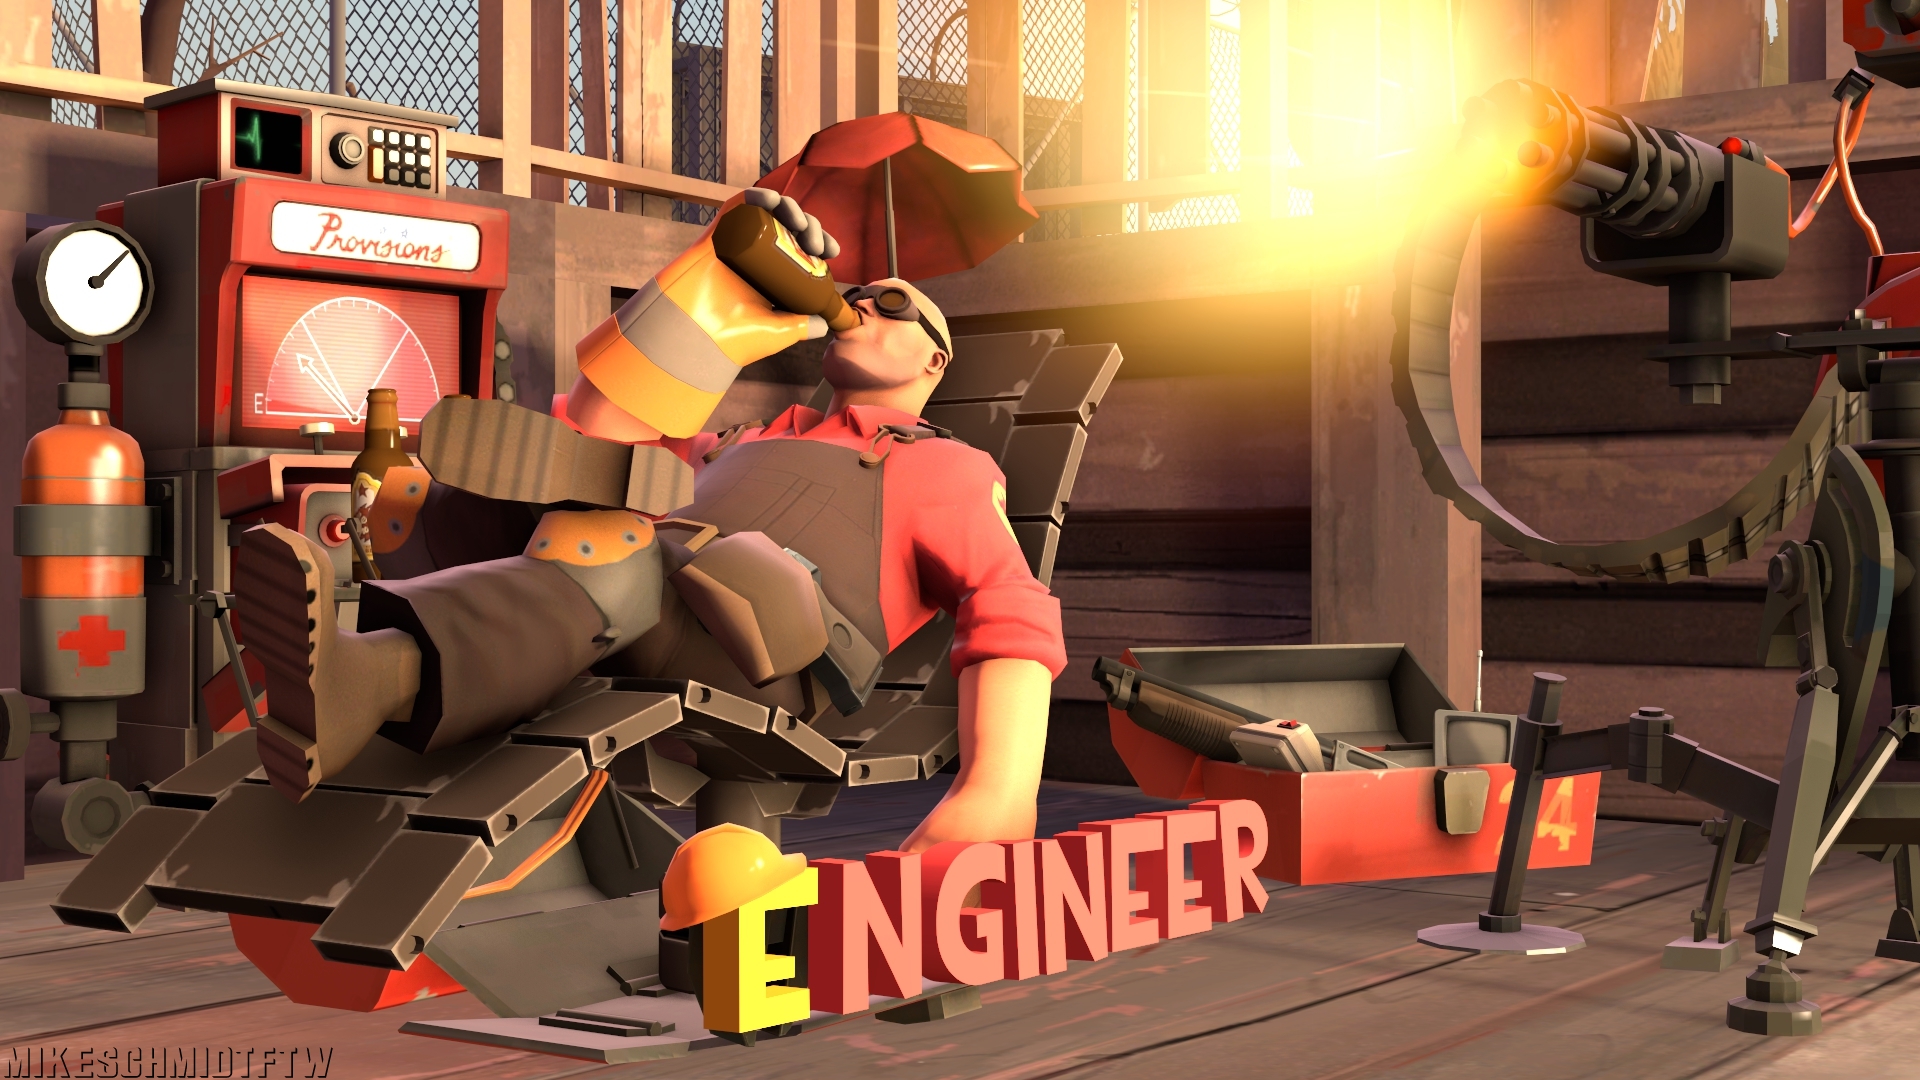 Engineer games. Инженер из тимфортреса 2. Team Fortress 2 инженер. Инженер из тим фортресс 2. Инженер из игры Team Fortress 2.